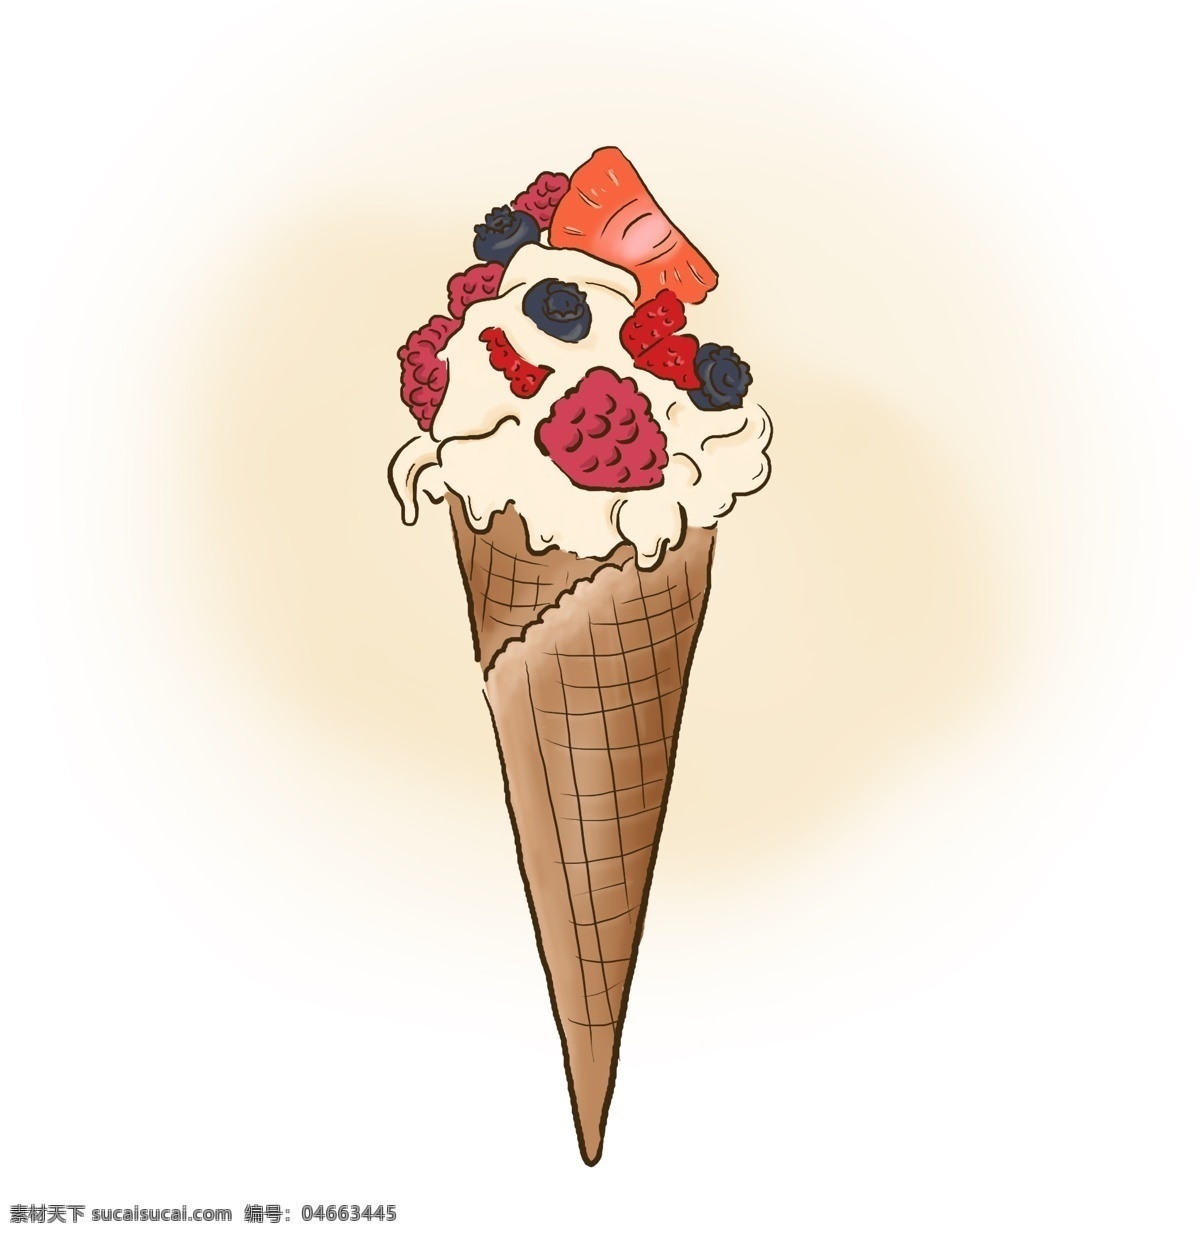 夏天 食物 手绘 冰淇淋 冰 甜筒 甜品 女生 粉色 水果 奶油 巧克力 插画 女性 节日 美食 吃 可爱 美味 青梅